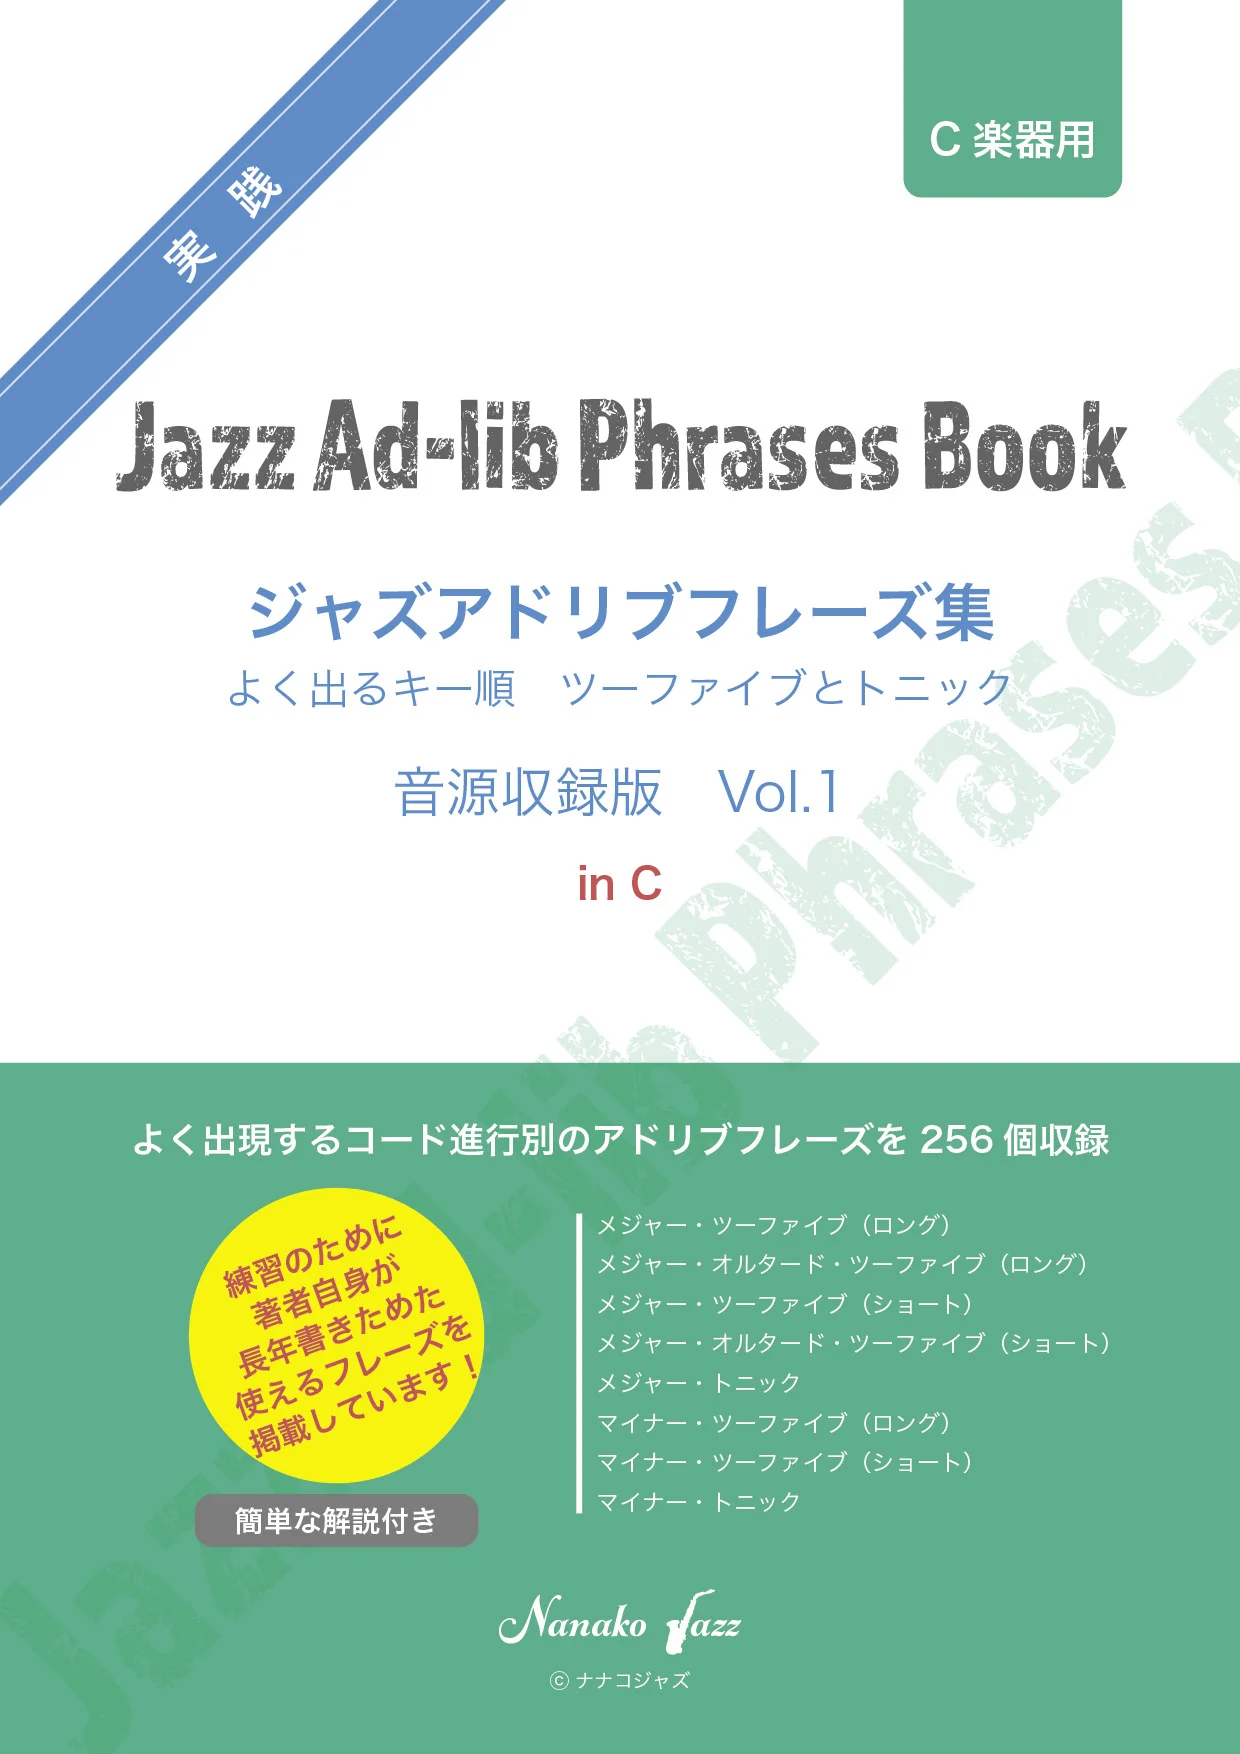 【移調楽器用あり】ジャズアドリブフレーズ集 vol.1 音源収録版 